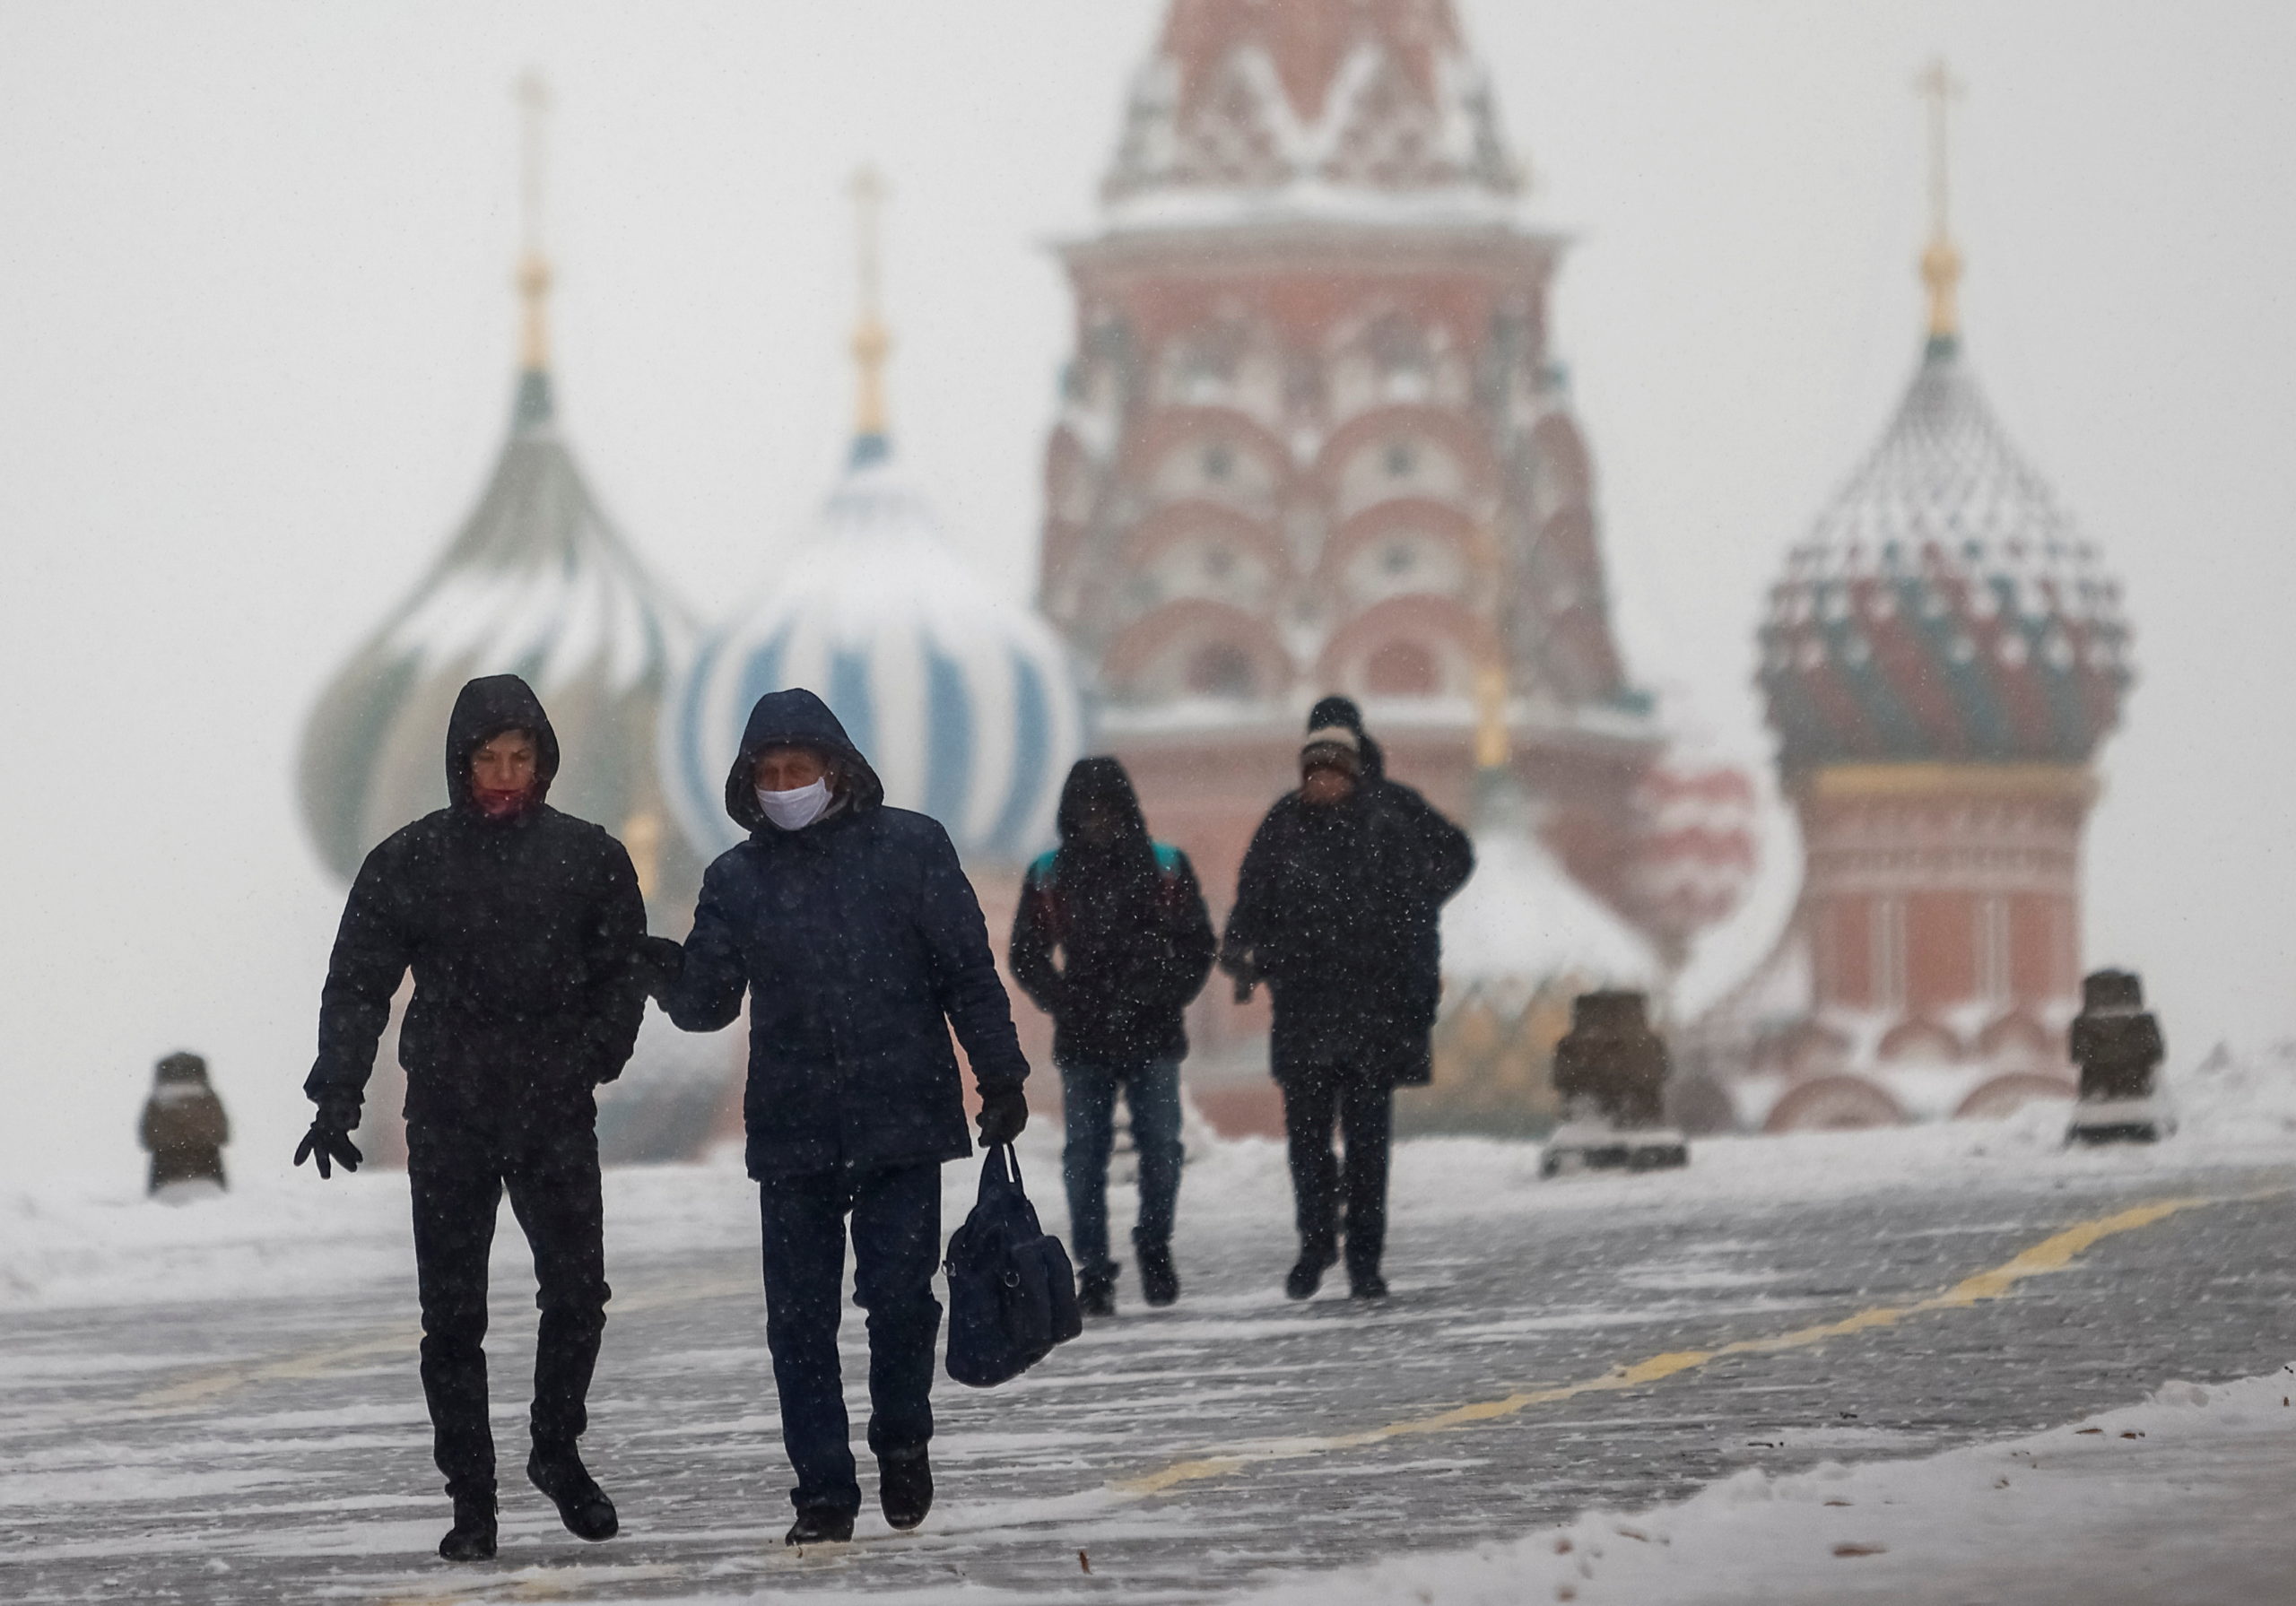 La Russie arrête 19 suspects projetant des attaques islamistes, selon l'agence TASS